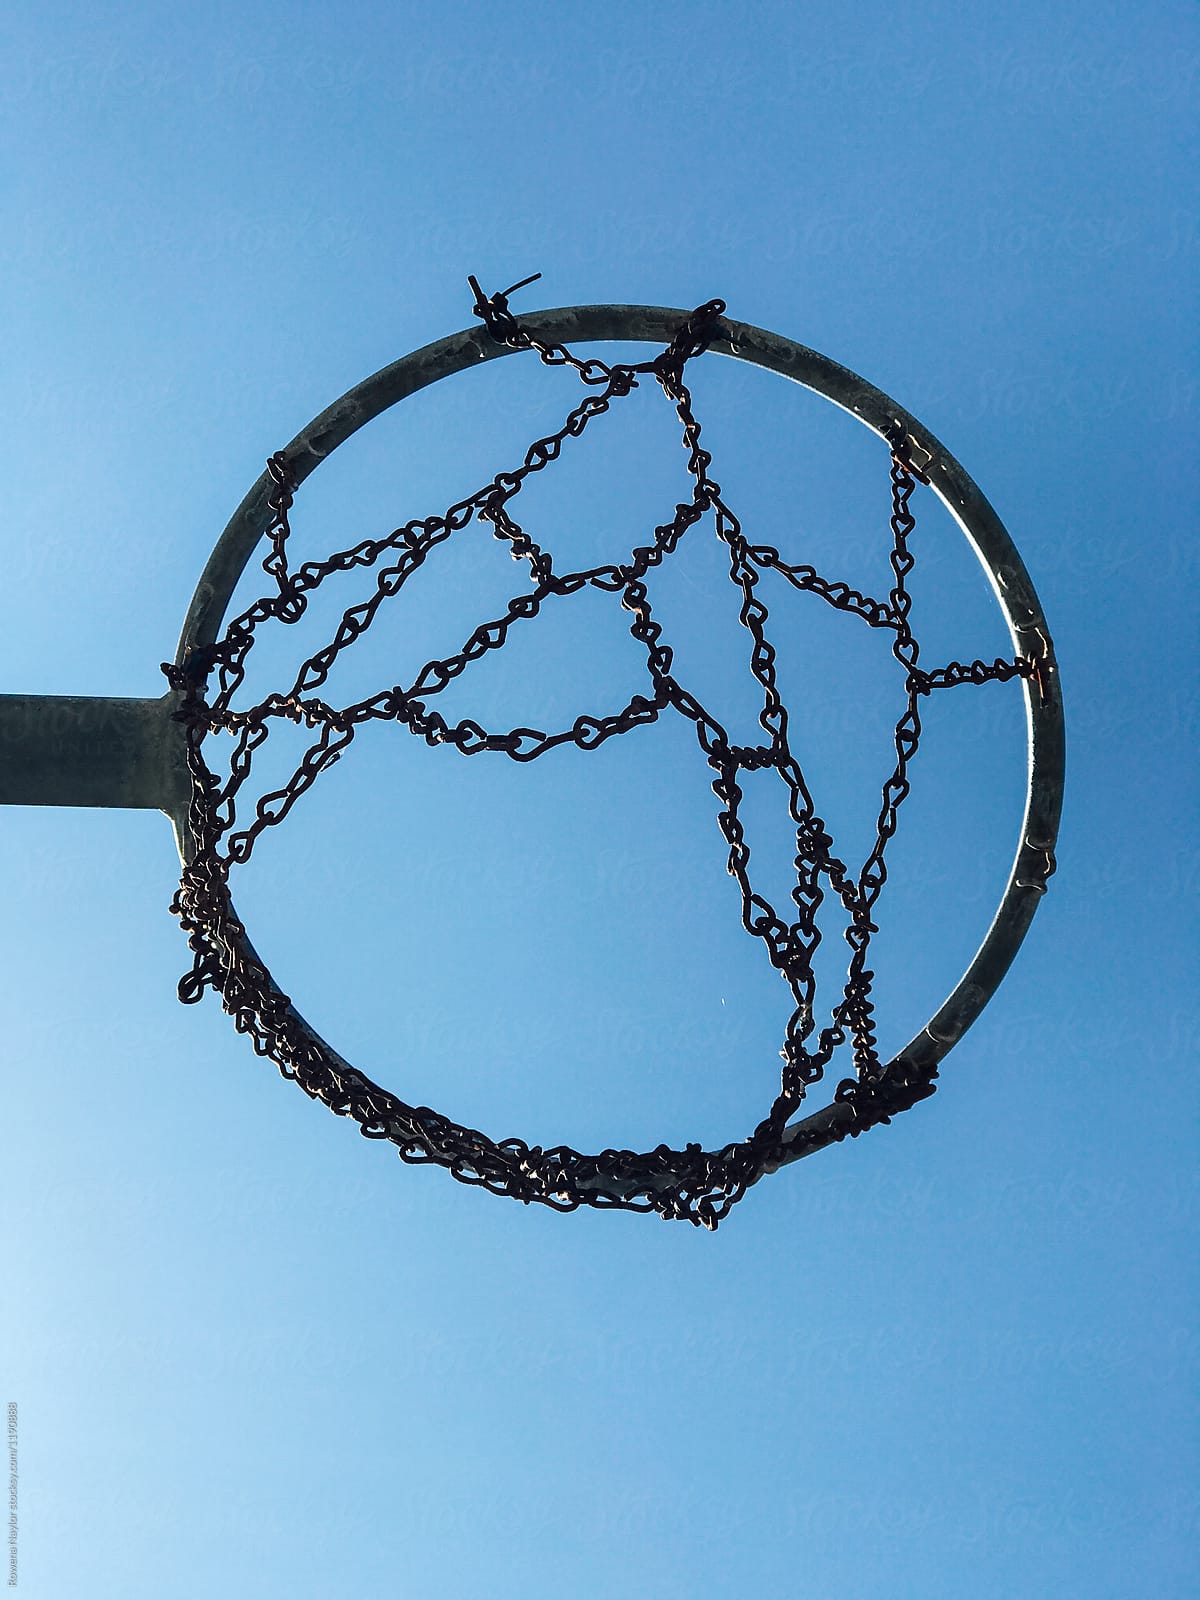 Iron chainlink basketball net